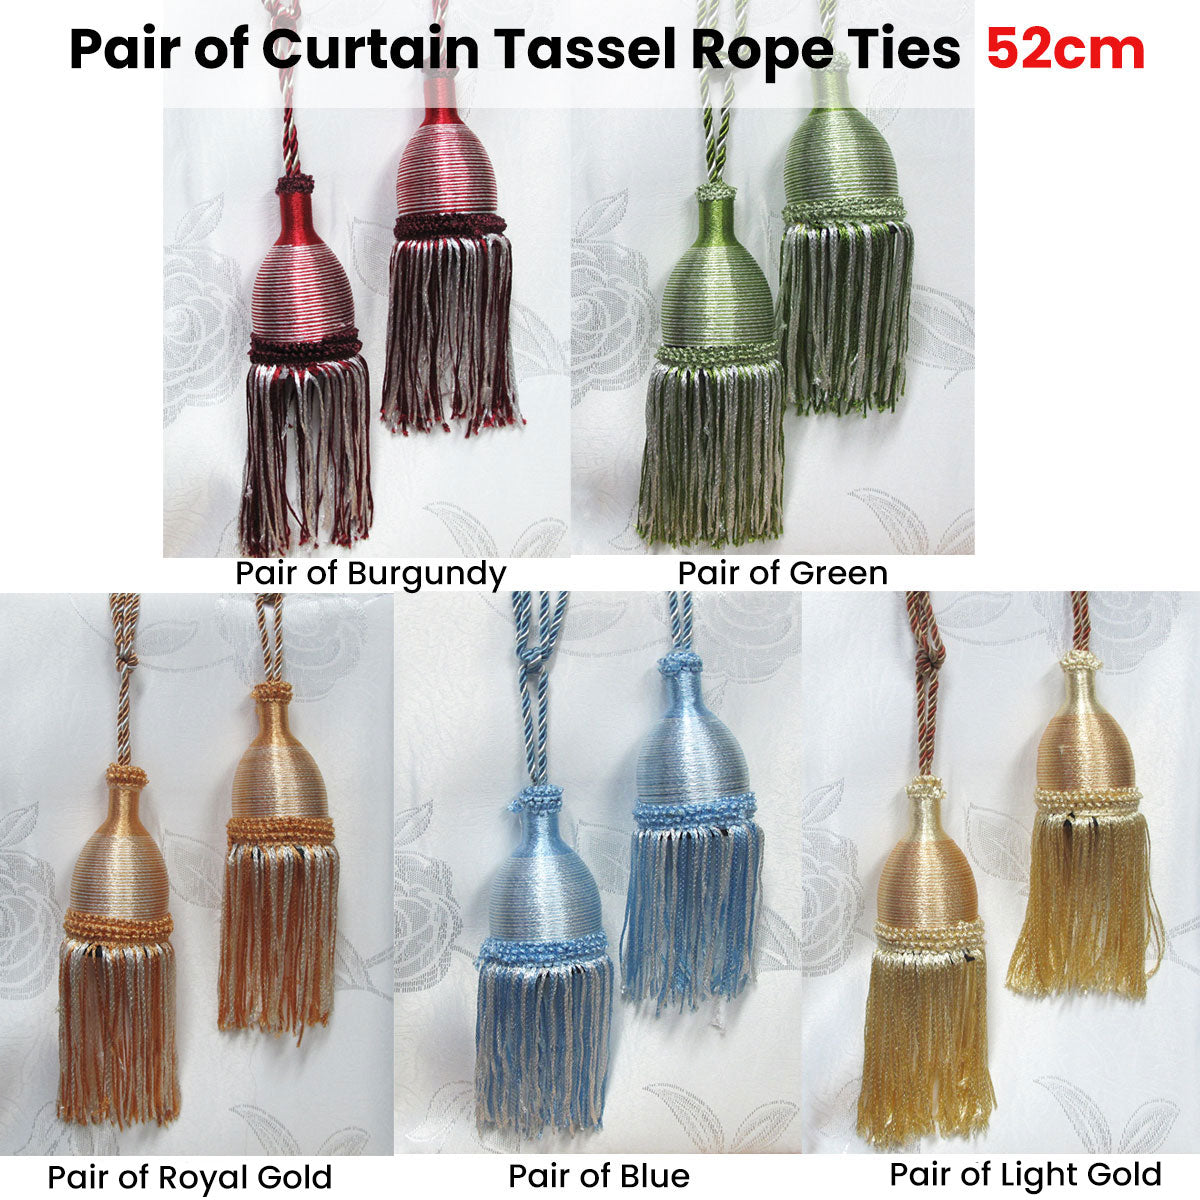 Pair of Curtain Tassel Rope Ties 52cm Green - SILBERSHELL